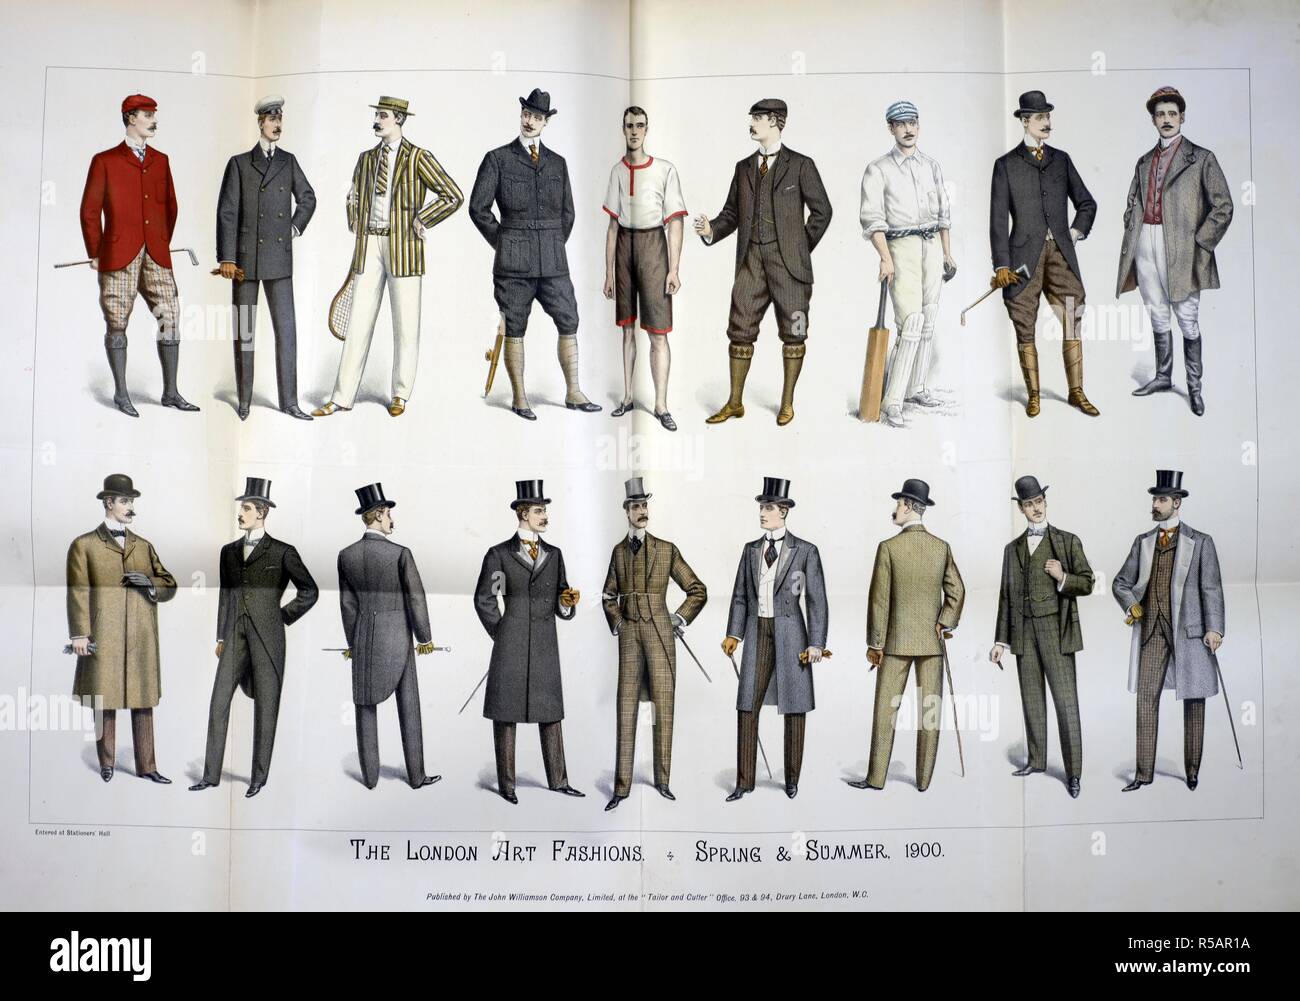 El arte de Londres de modas. Una galería que muestra los hombres trajes que desde smart para vestuario deportivo. Arte Moda oficial. Londres, 1900. Fuente: revista de moda